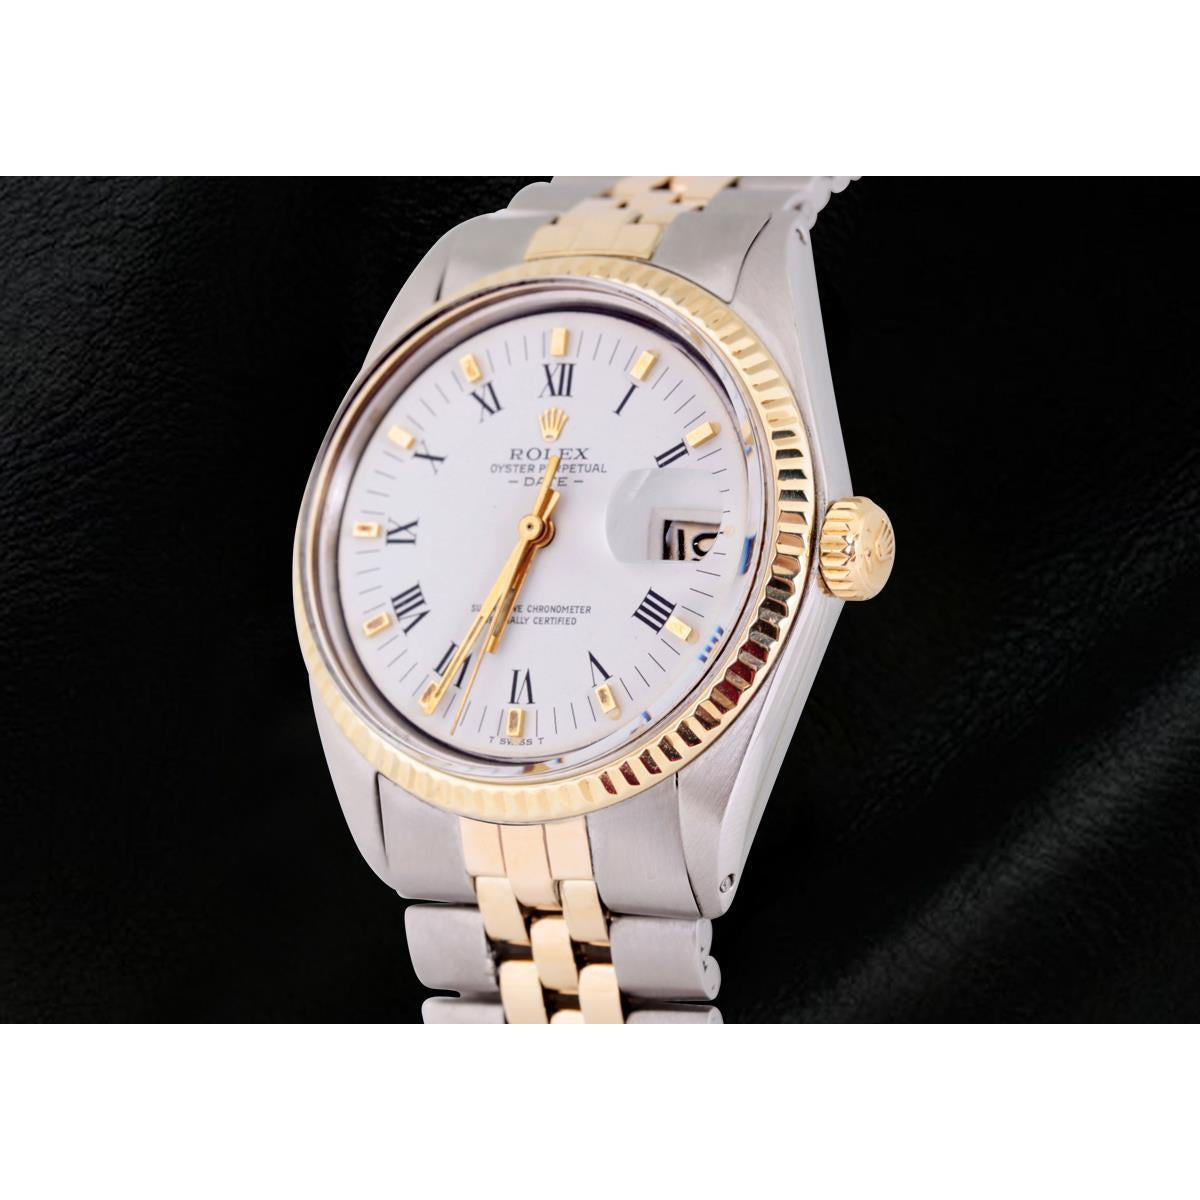 Ss & Gold Jubilee Bracelet Rolex Men Date Watch Roman Dial